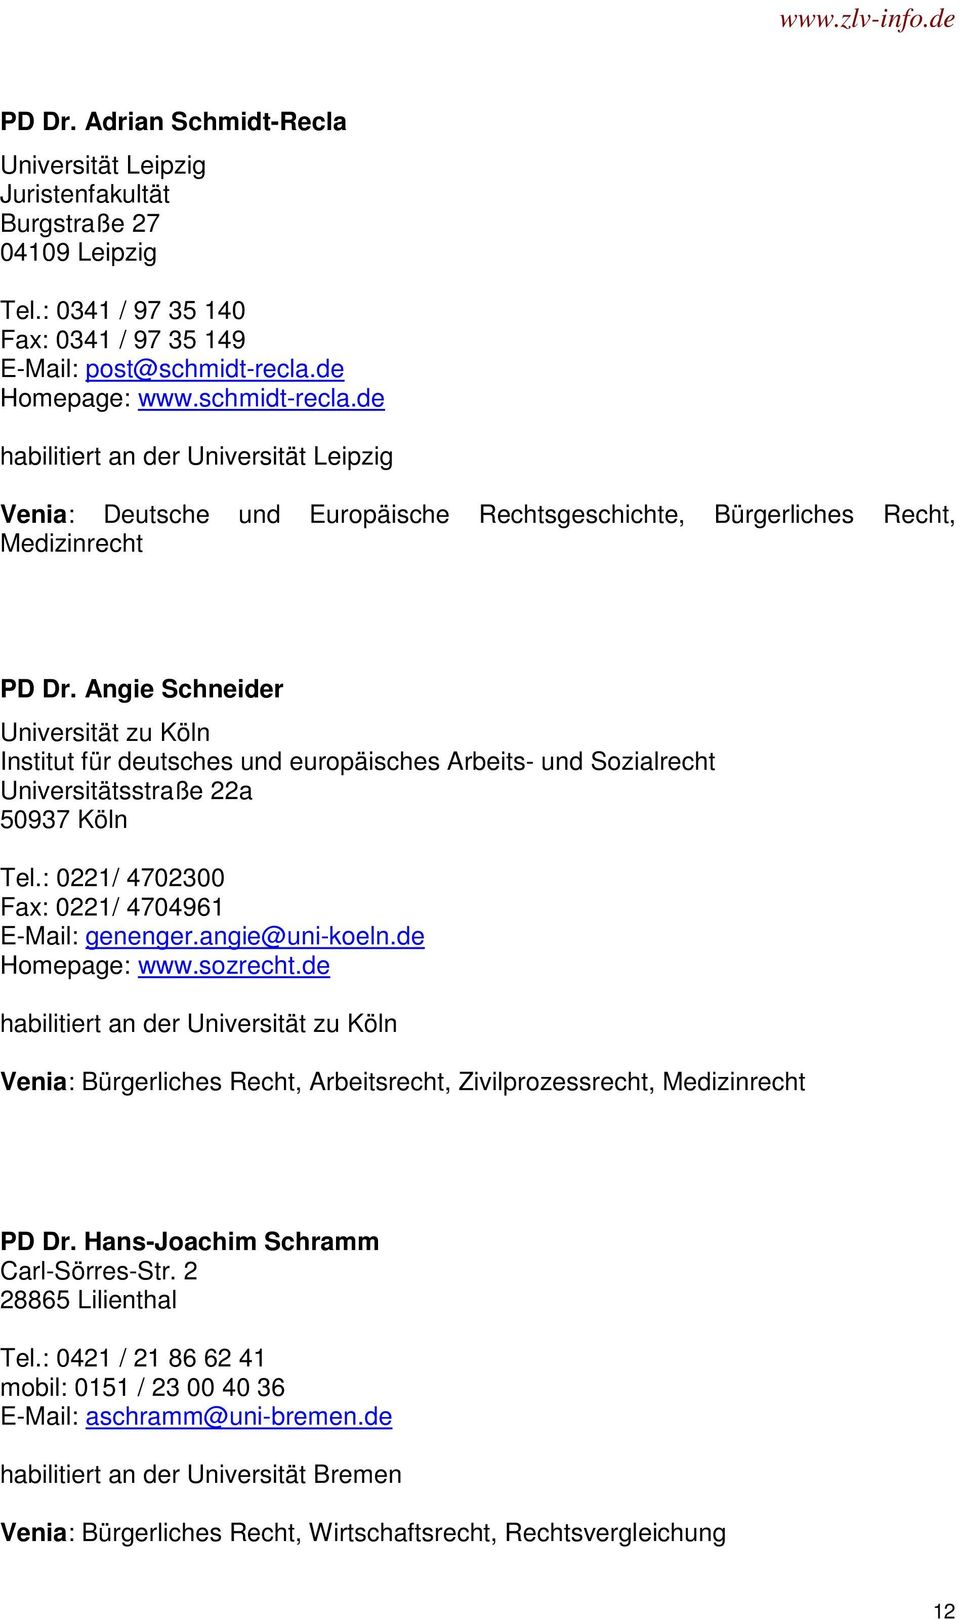 Angie Schneider Universität zu Köln Institut für deutsches und europäisches Arbeits- und Sozialrecht Universitätsstraße 22a 50937 Köln Tel.: 0221/ 4702300 Fax: 0221/ 4704961 E-Mail: genenger.